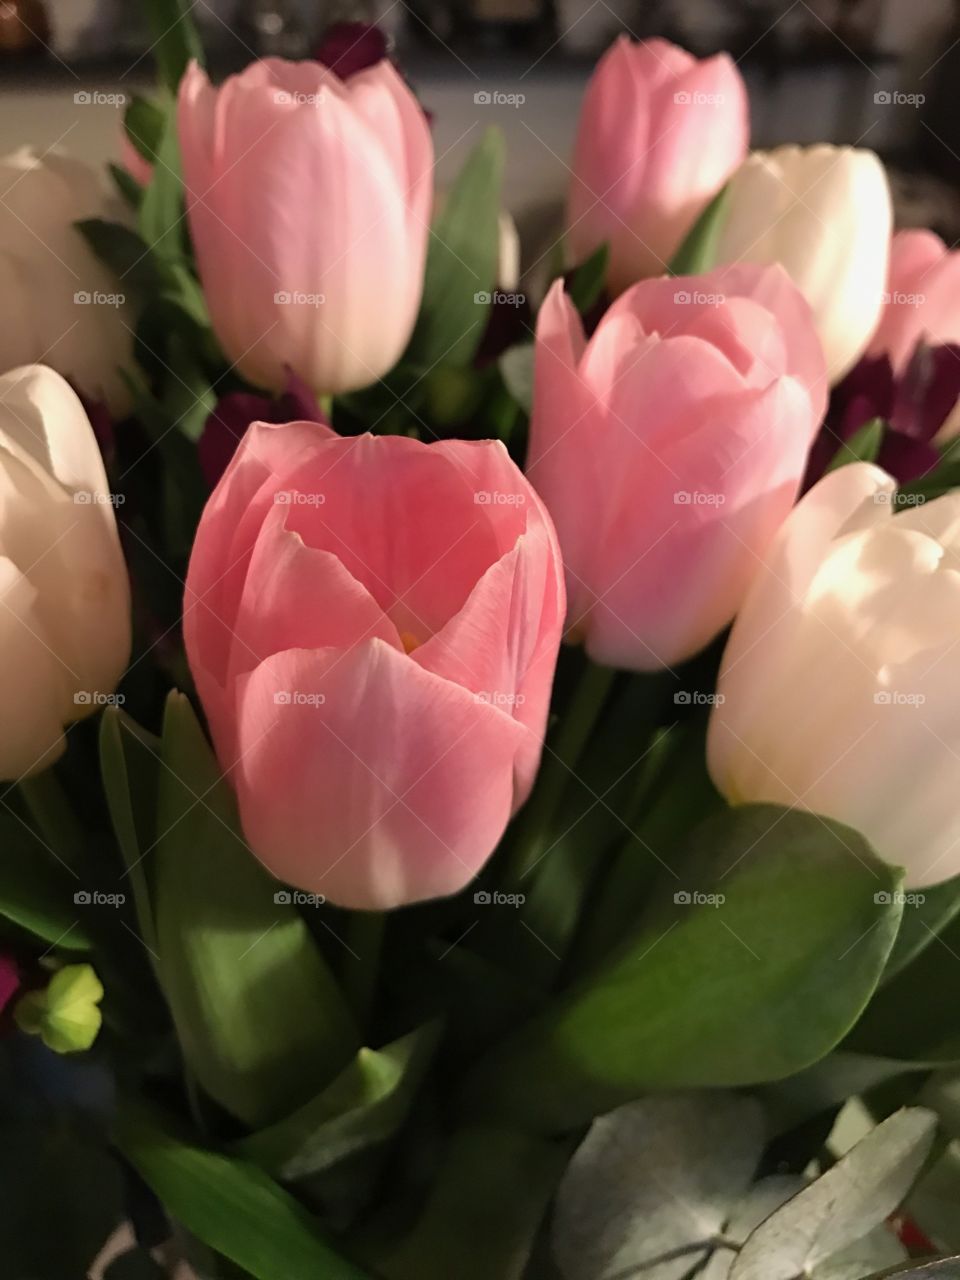 No Person, Tulip, Flower, Nature, Bouquet